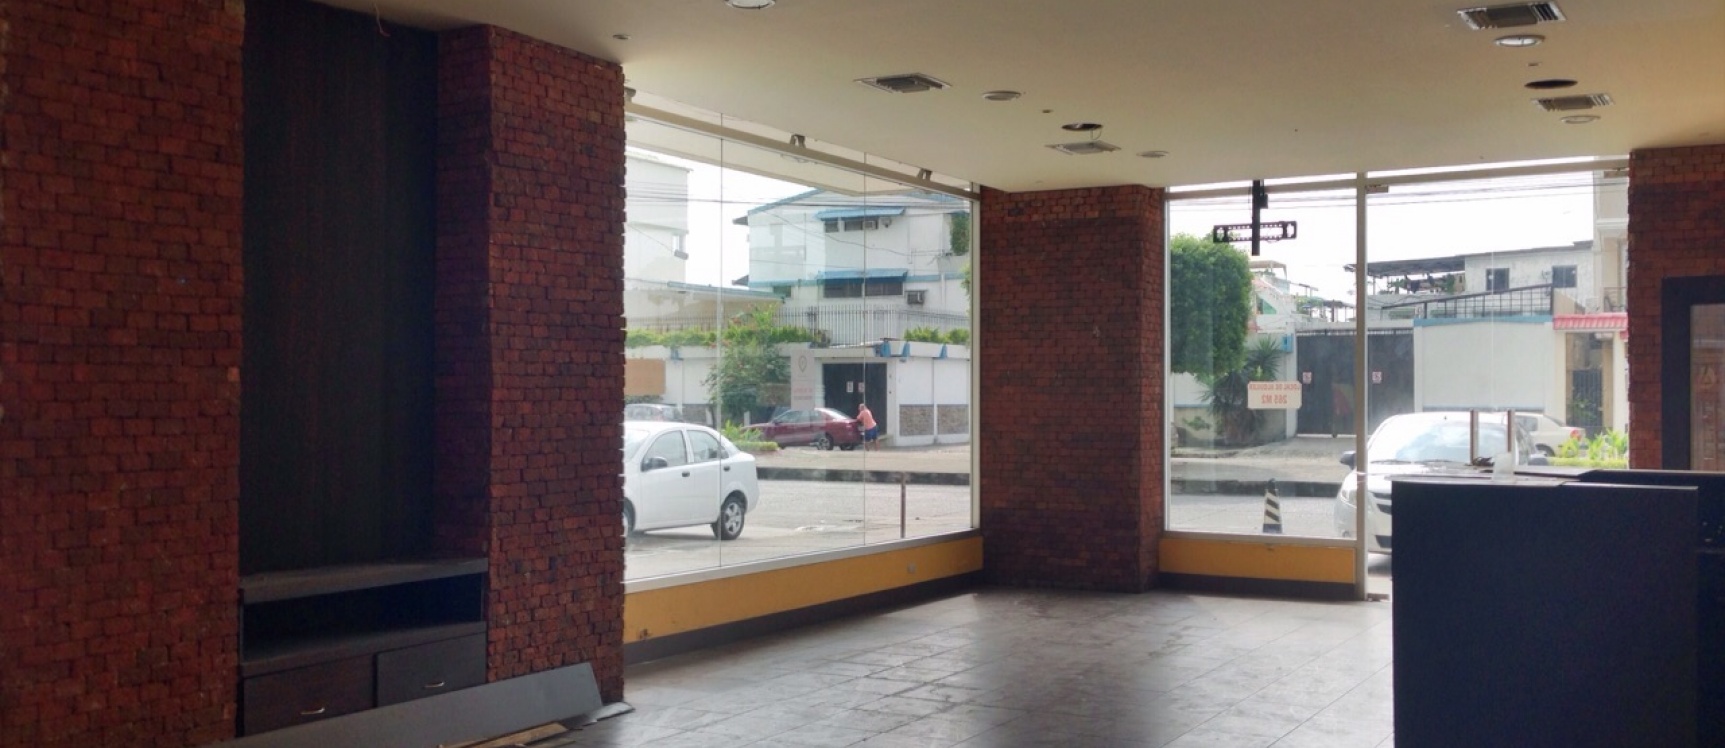 GeoBienes - Alquiler de local Comercial Zona Mall del Sol Guayaquil - Plusvalia Guayaquil Casas de venta y alquiler Inmobiliaria Ecuador